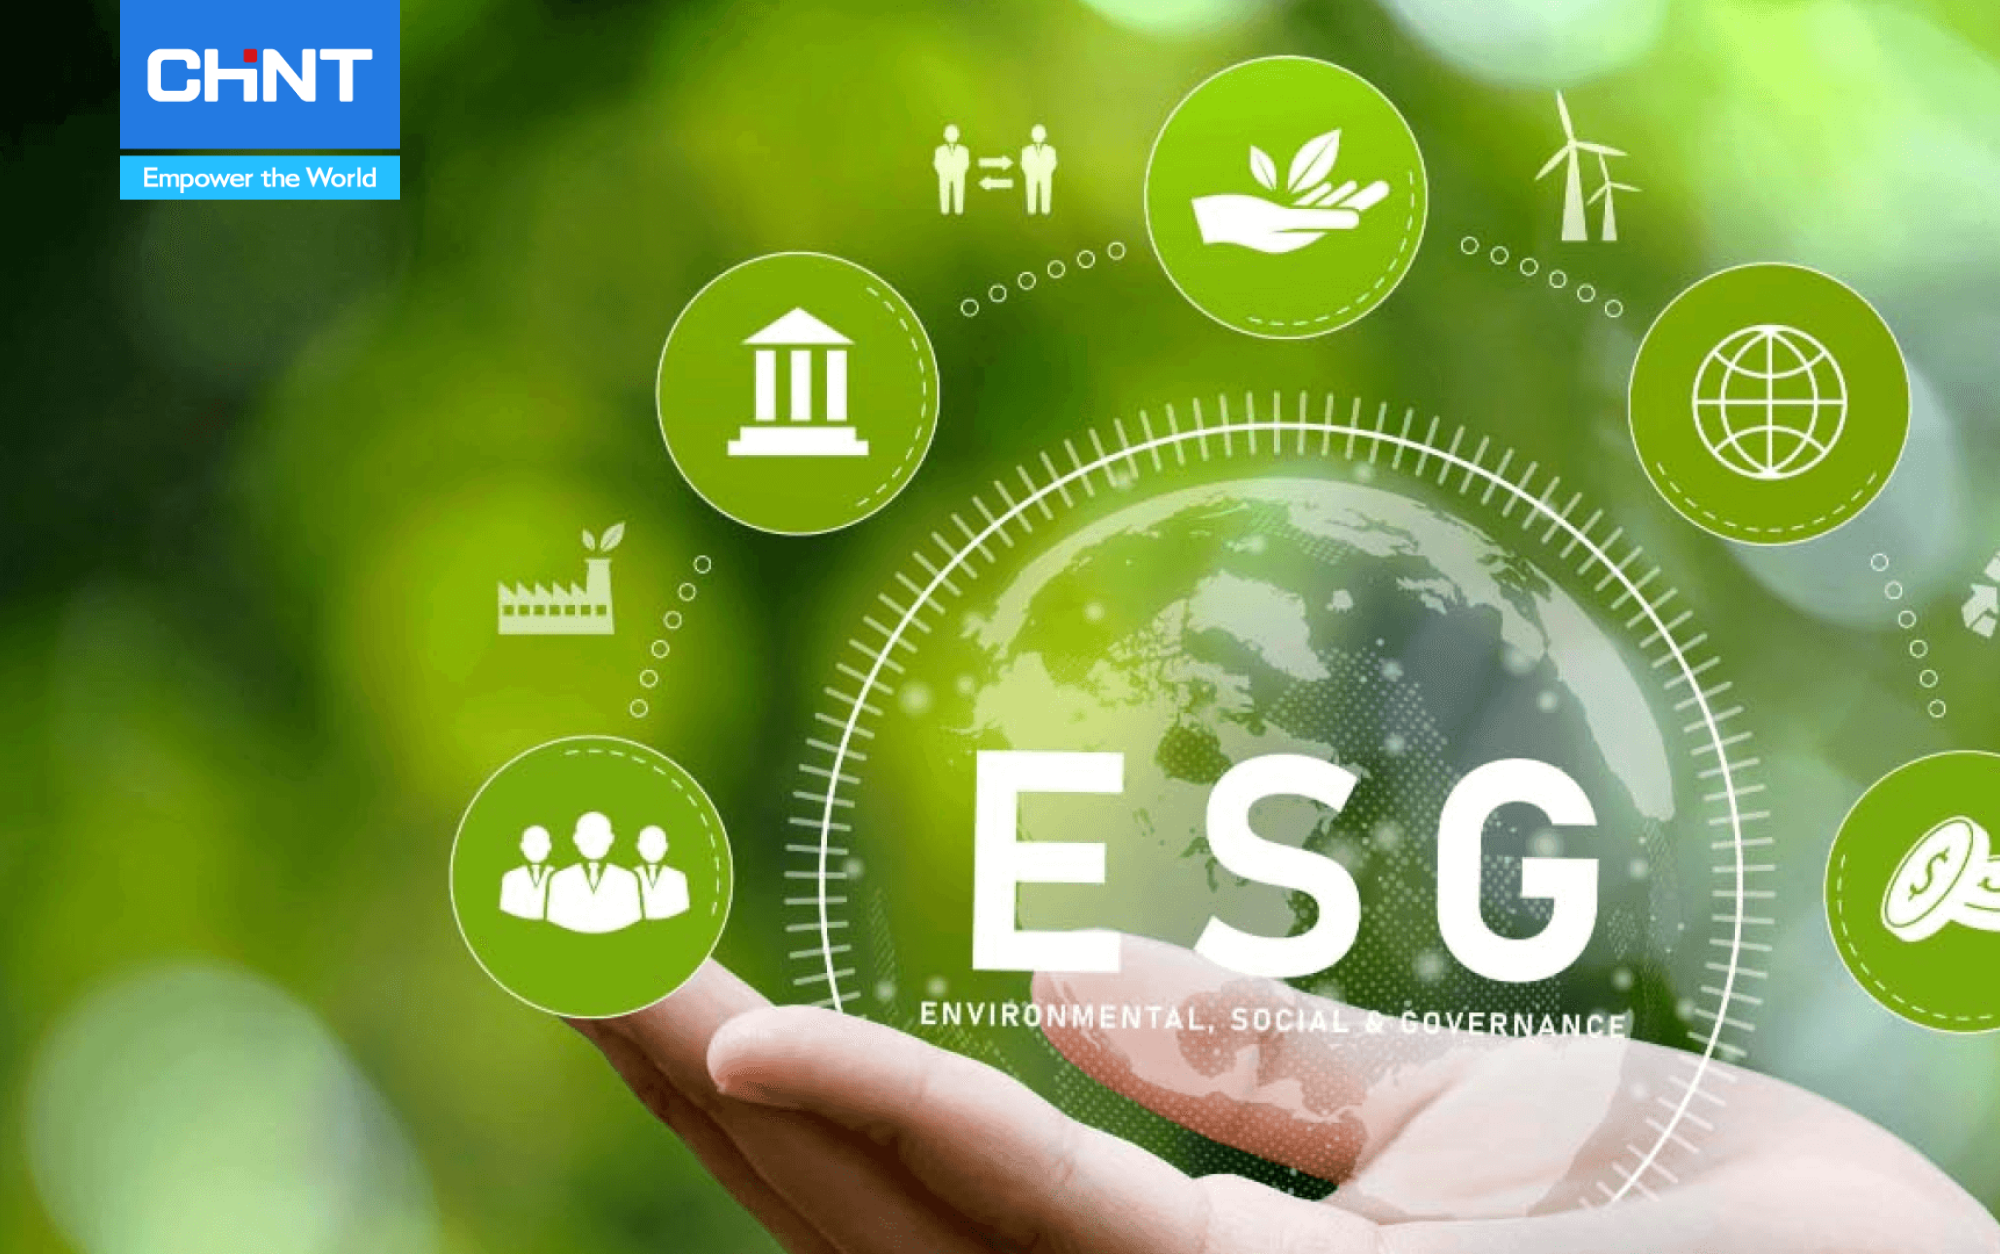 tập đoàn chint nỗ lực thực hiện các mục tiêu ESG